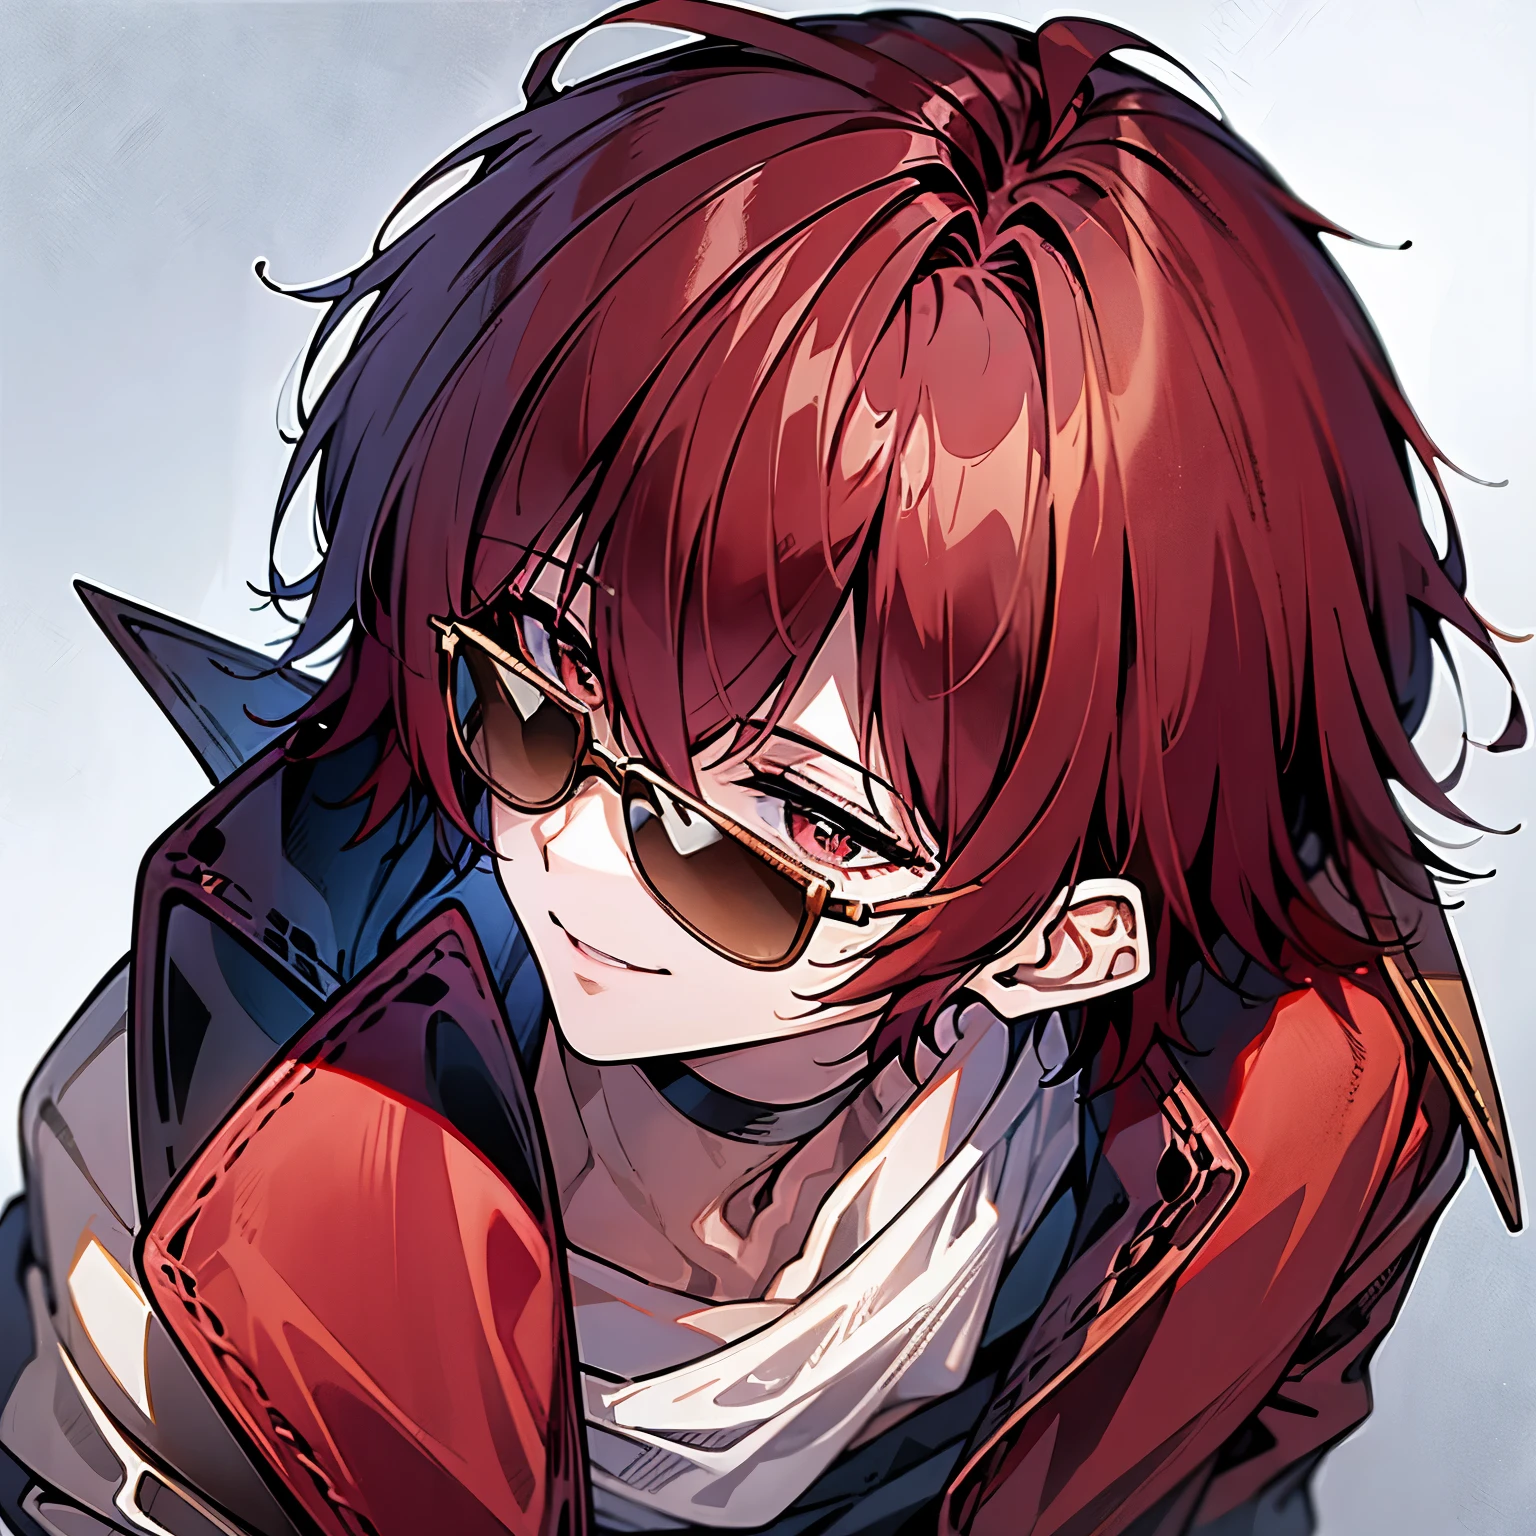 Un hombre con pelo rojo, sonriendo con gafas de sol encima de la cabeza, usando una chaqueta morada